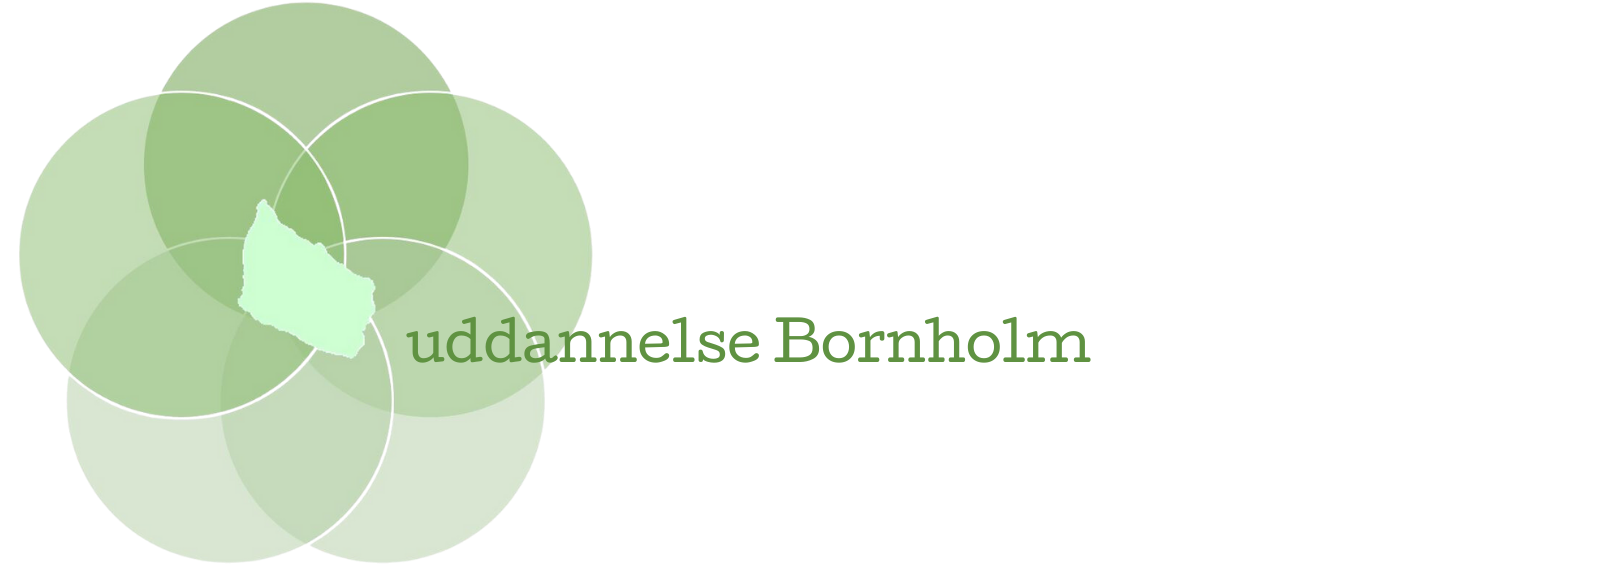 Uddannelse Bornholm - Forside